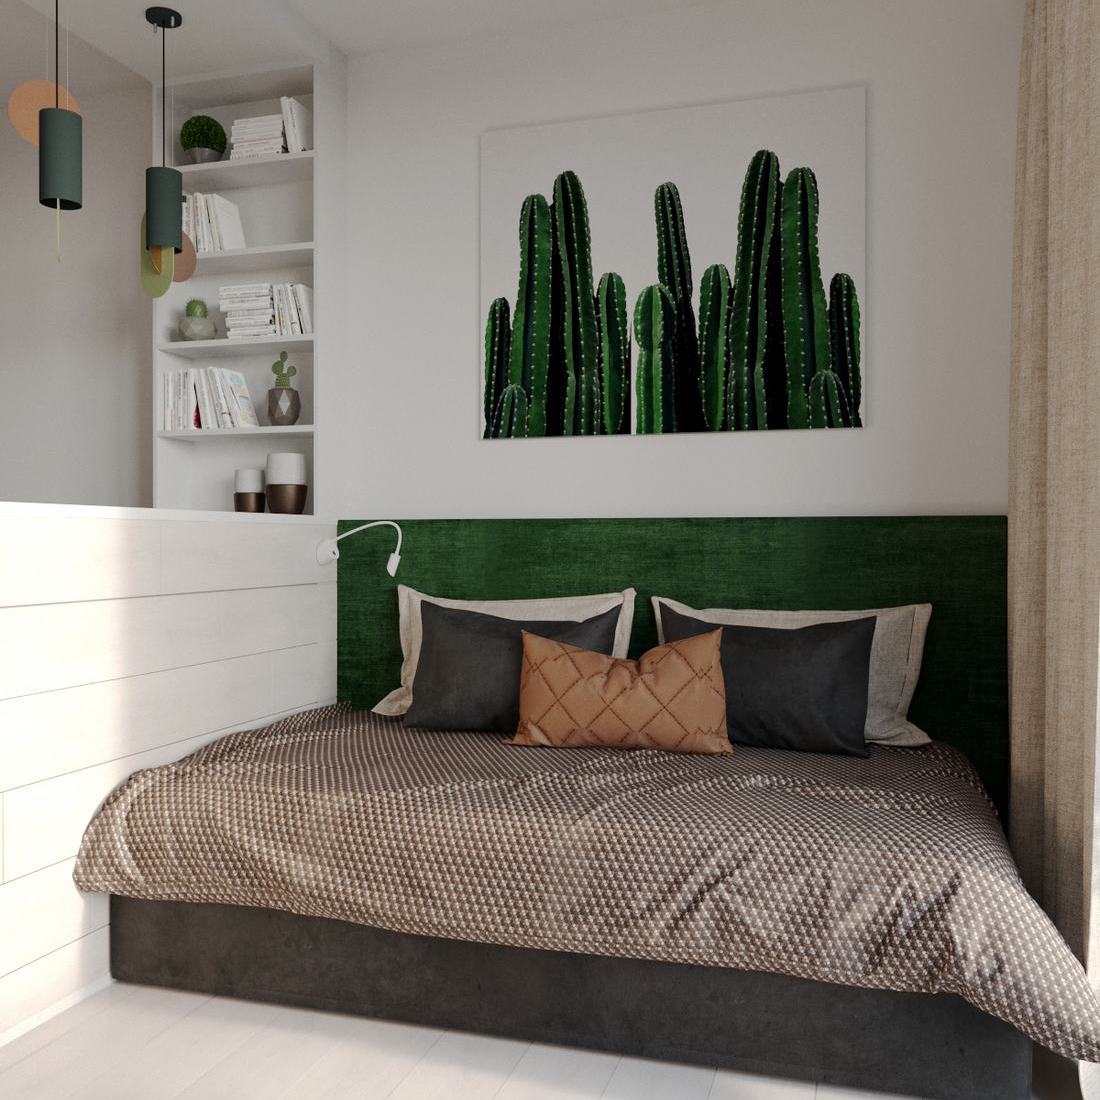 Mély zöld és fehér szép kombinációja természetes színekkel kis lakásban - fiatal lány 28m2-es otthona egyszerű konyhával